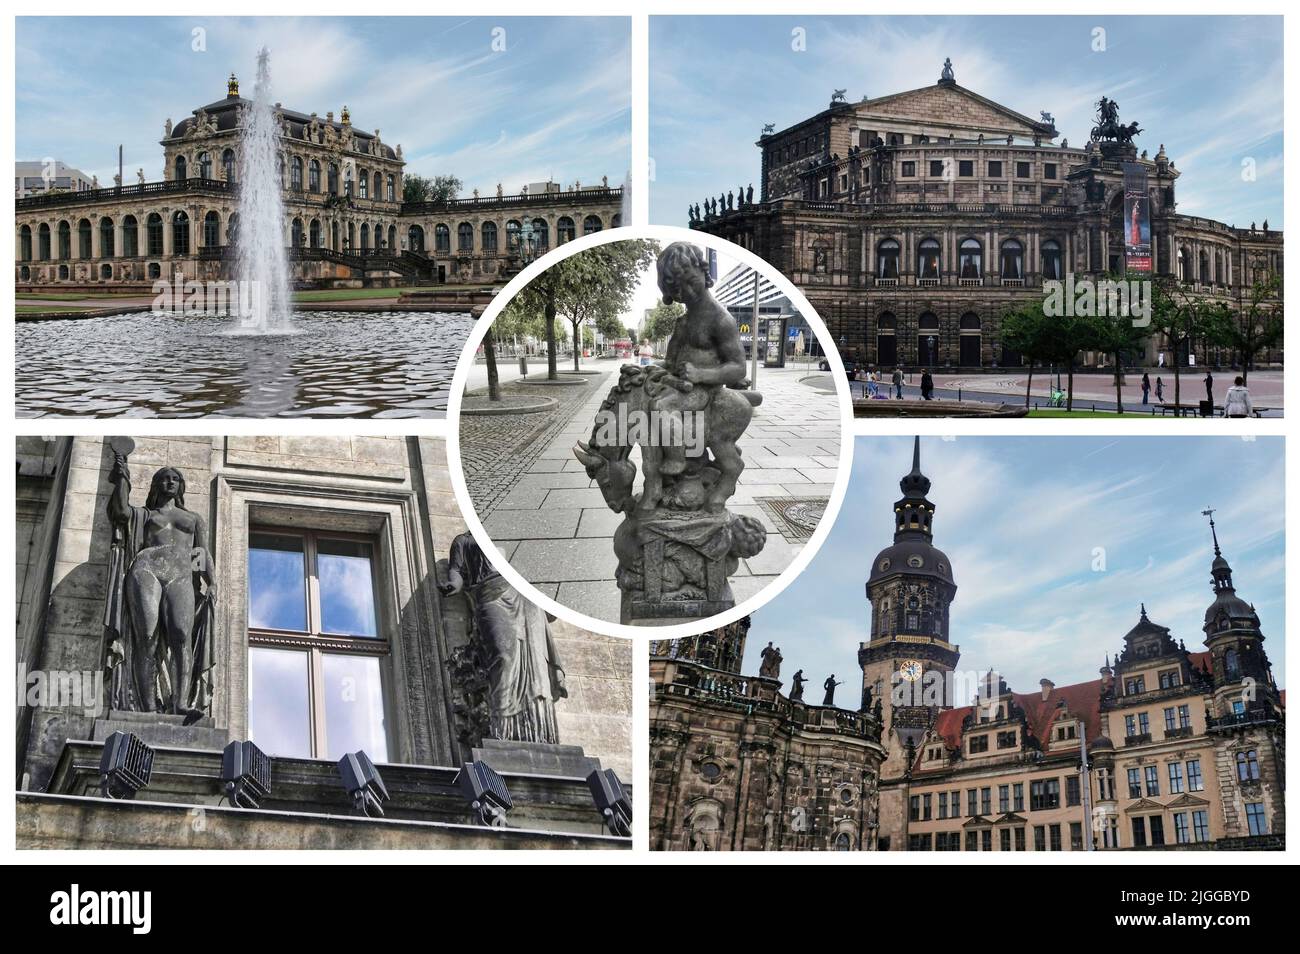 Dresde, capitale de l'État allemand de Saxe, se caractérise par de célèbres musées d'art et l'architecture classique de la vieille ville reconstruite. Banque D'Images